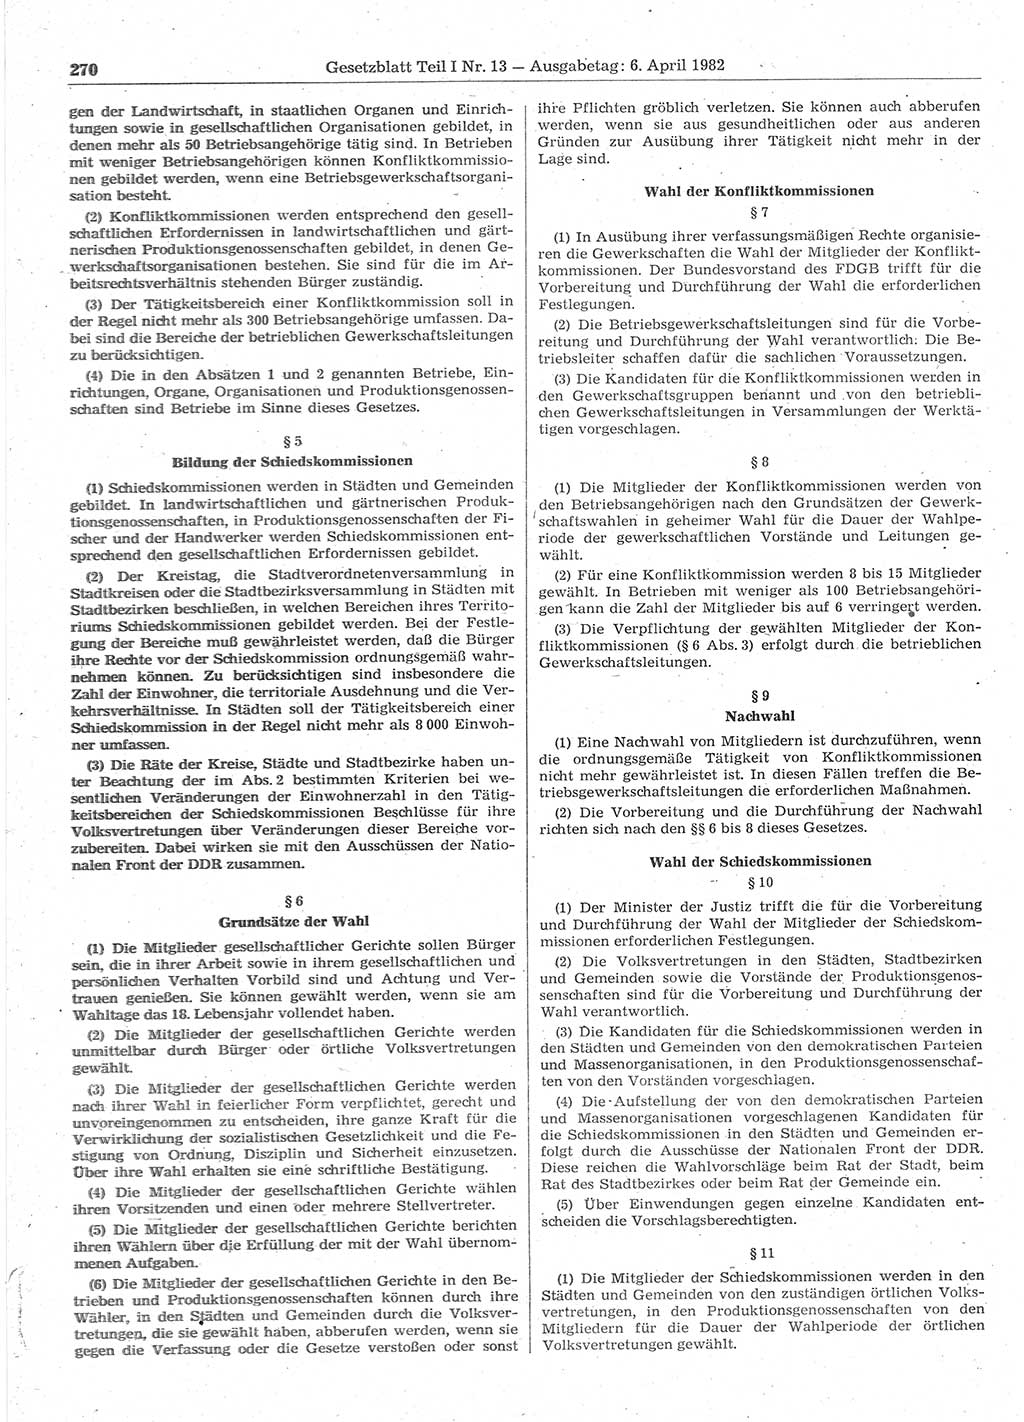 Gesetzblatt (GBl.) der Deutschen Demokratischen Republik (DDR) Teil Ⅰ 1982, Seite 270 (GBl. DDR Ⅰ 1982, S. 270)